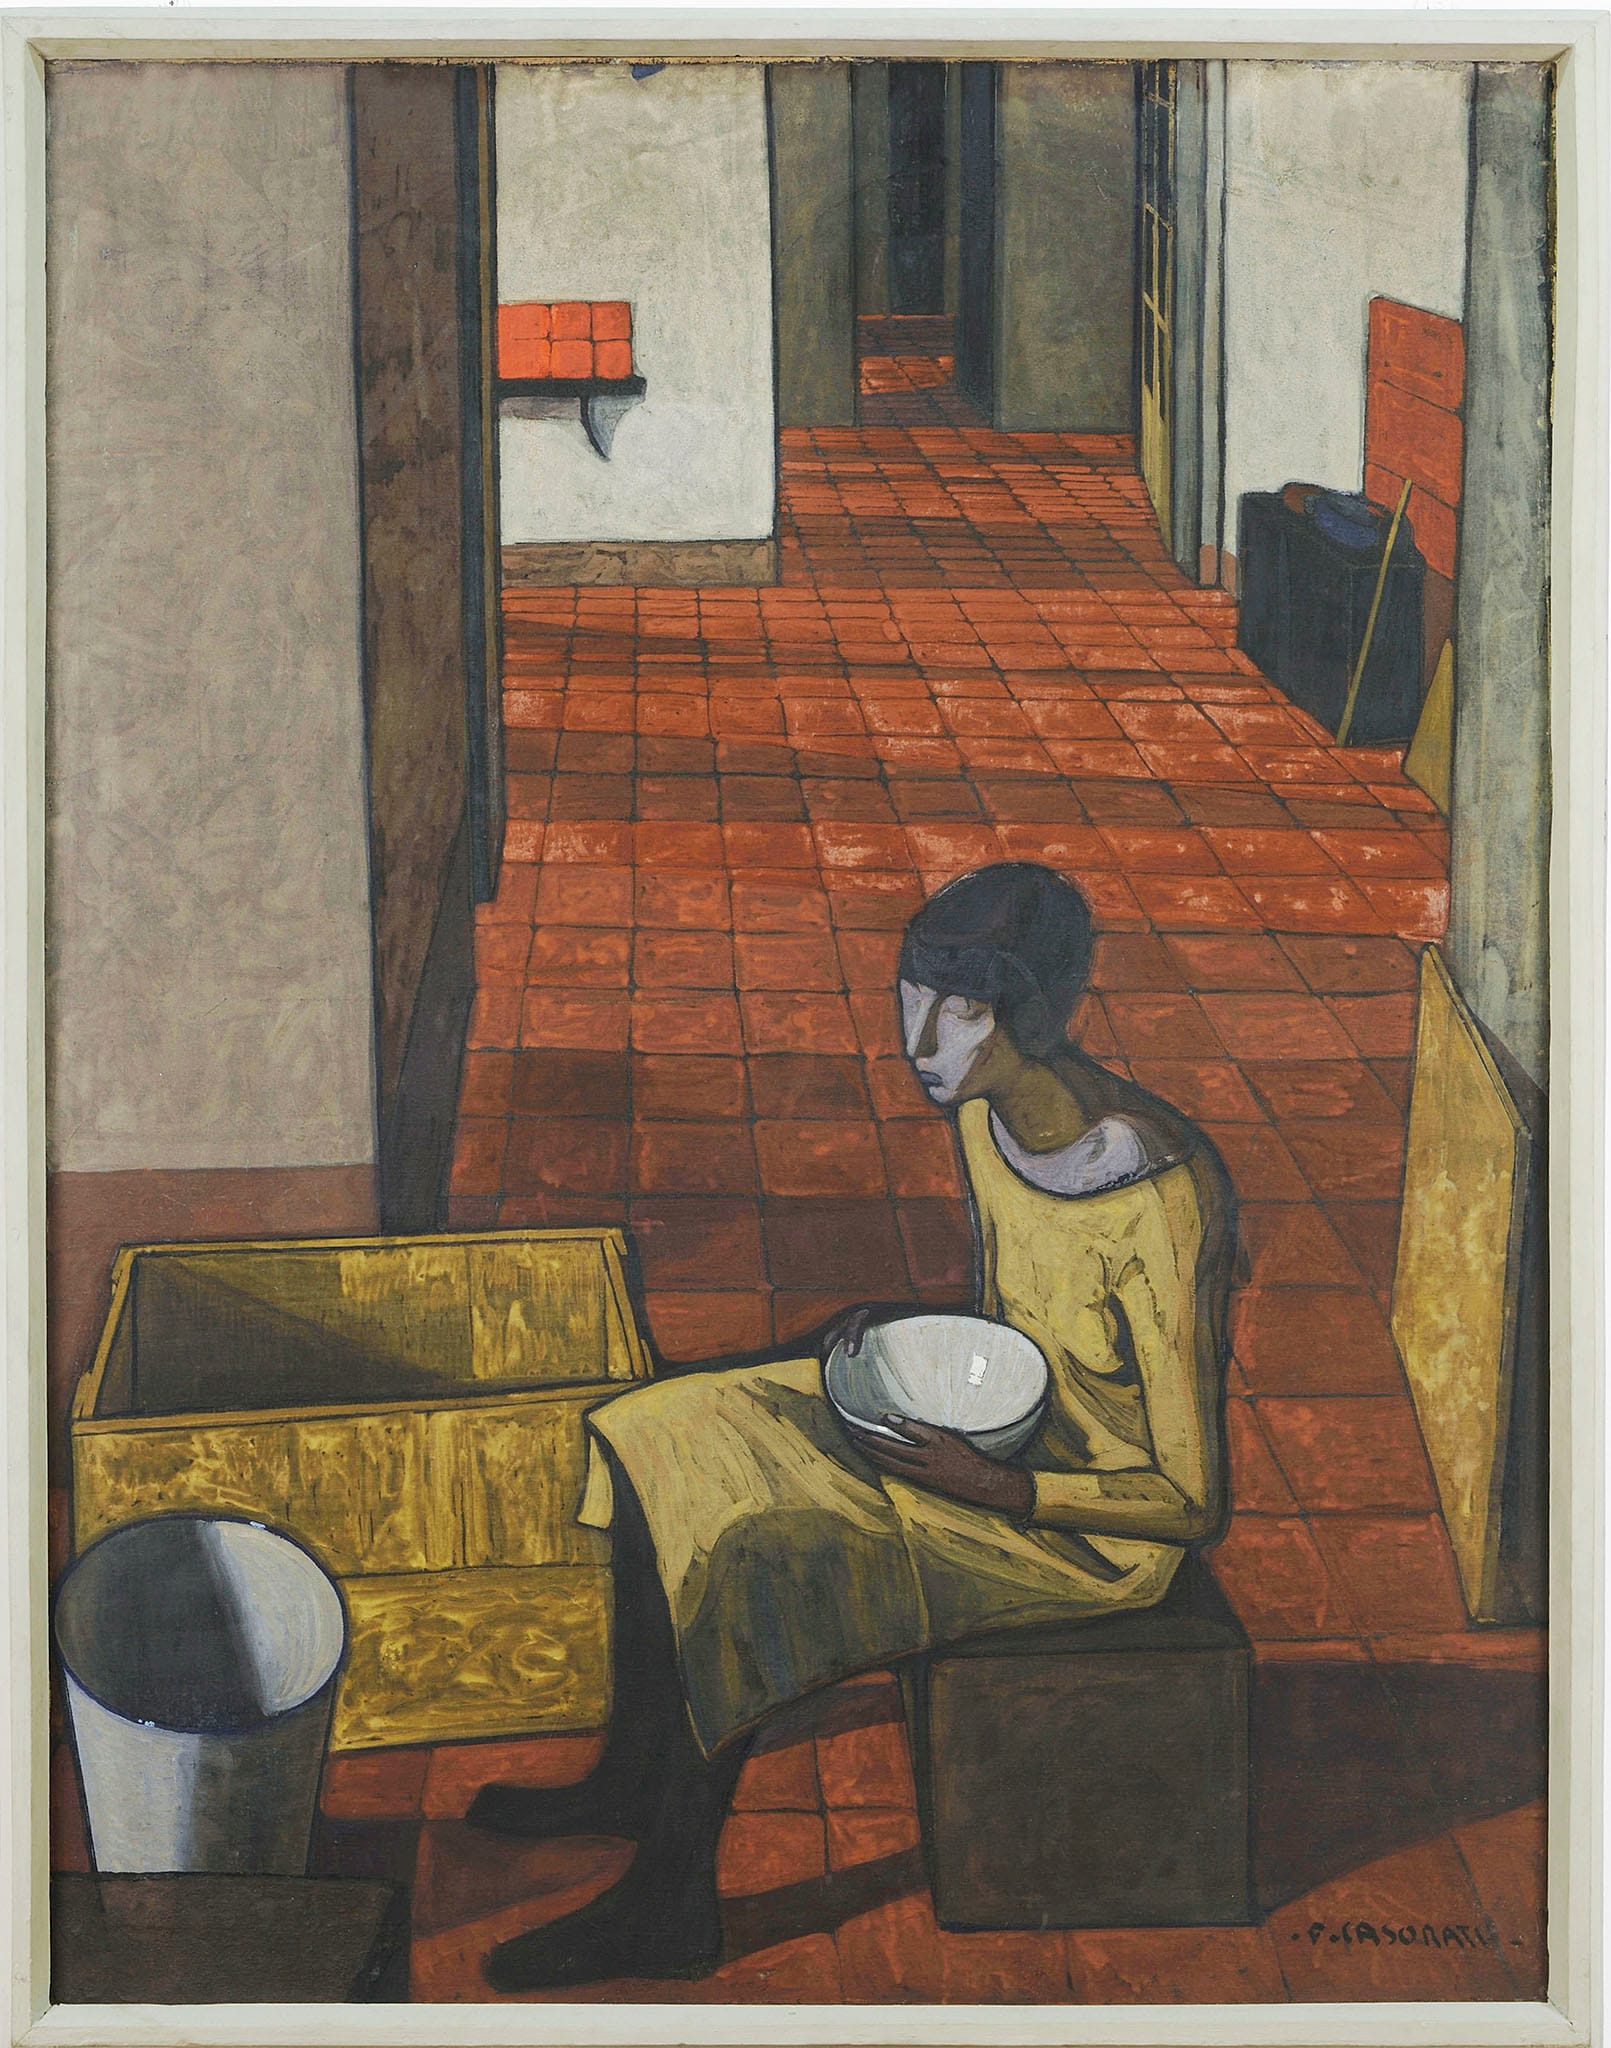 Felice Casorati - Ragazza con scodella (Interno) (Mattino), (1919-1920) - tempera su tela - GAM - Galleria Civica d'Arte Moderna e Contemporanea, Torino 